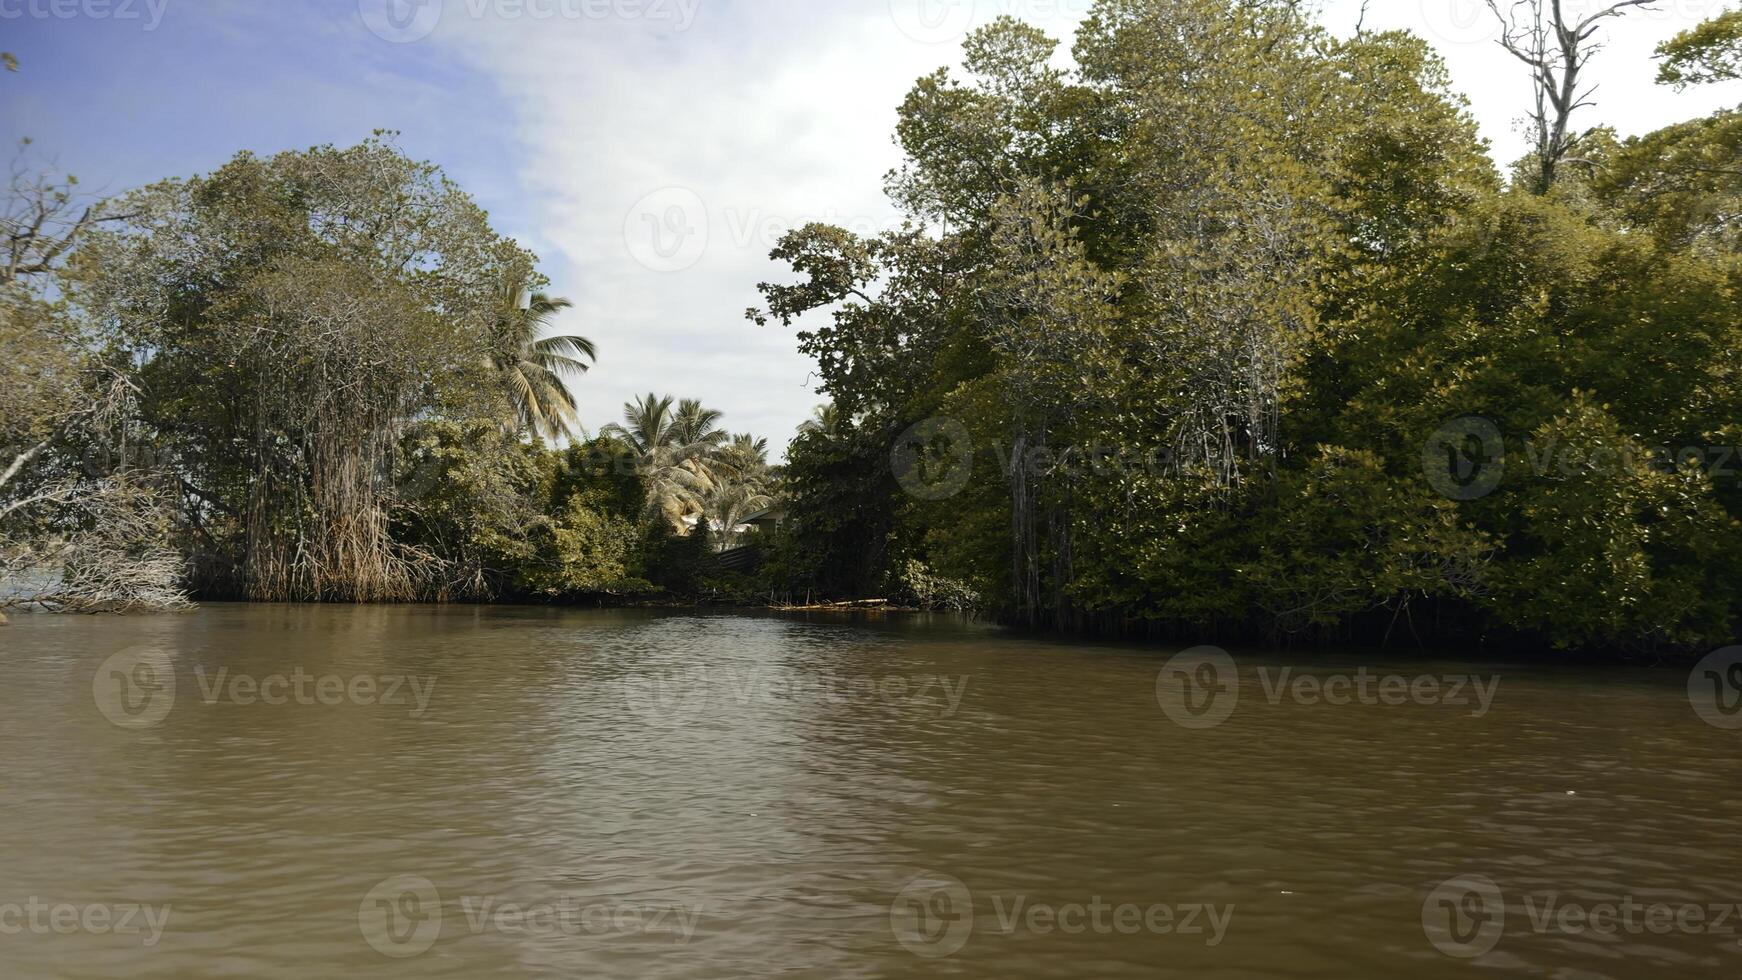 först person se från de båt flytande på de flod genom mangrove i de vild tropisk regnskog. handling. grön buskar och träd och smutsig flod. foto